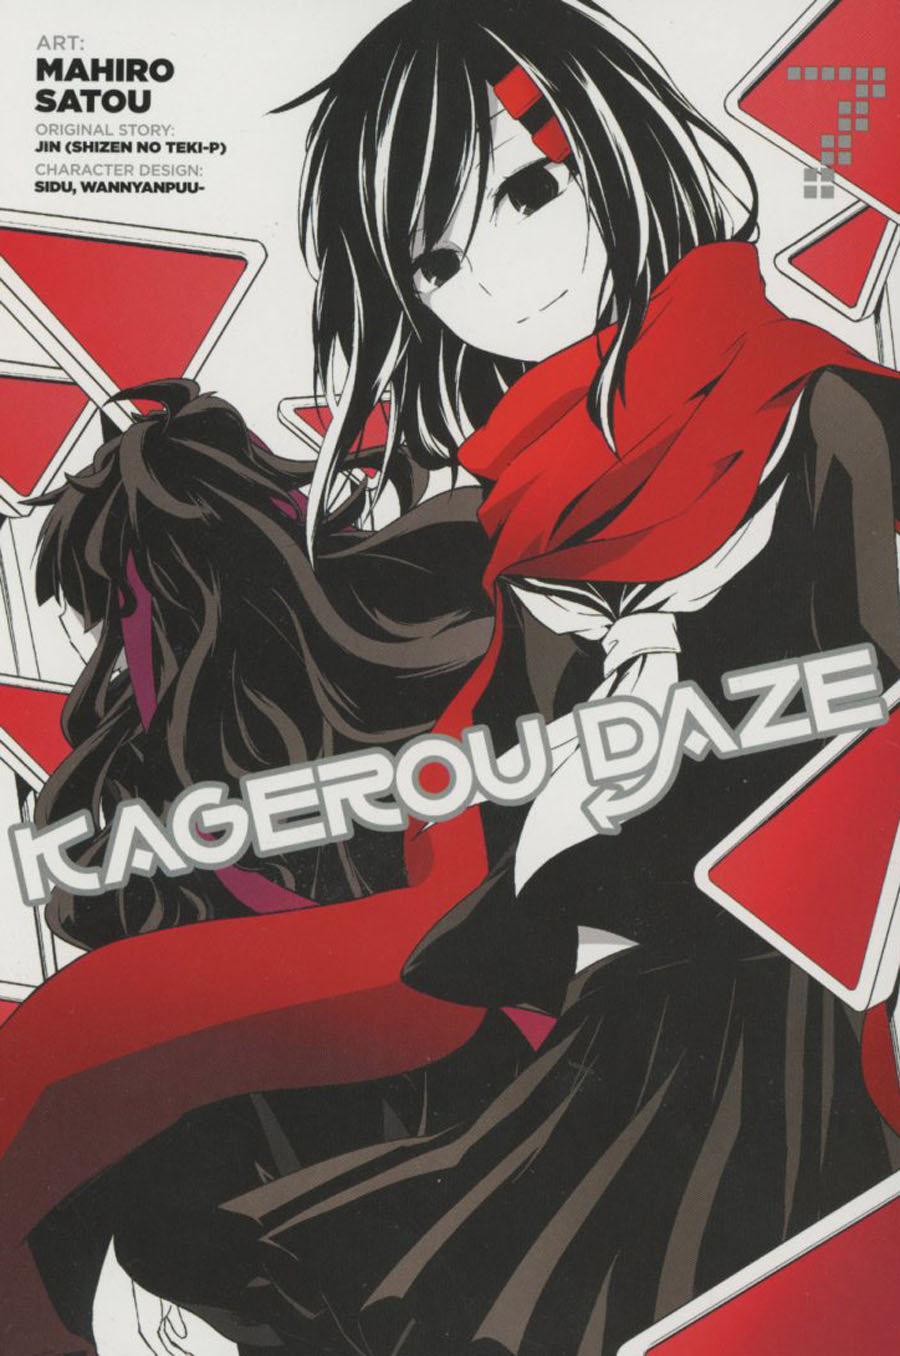 Kagerou Daze Vol 7 GN